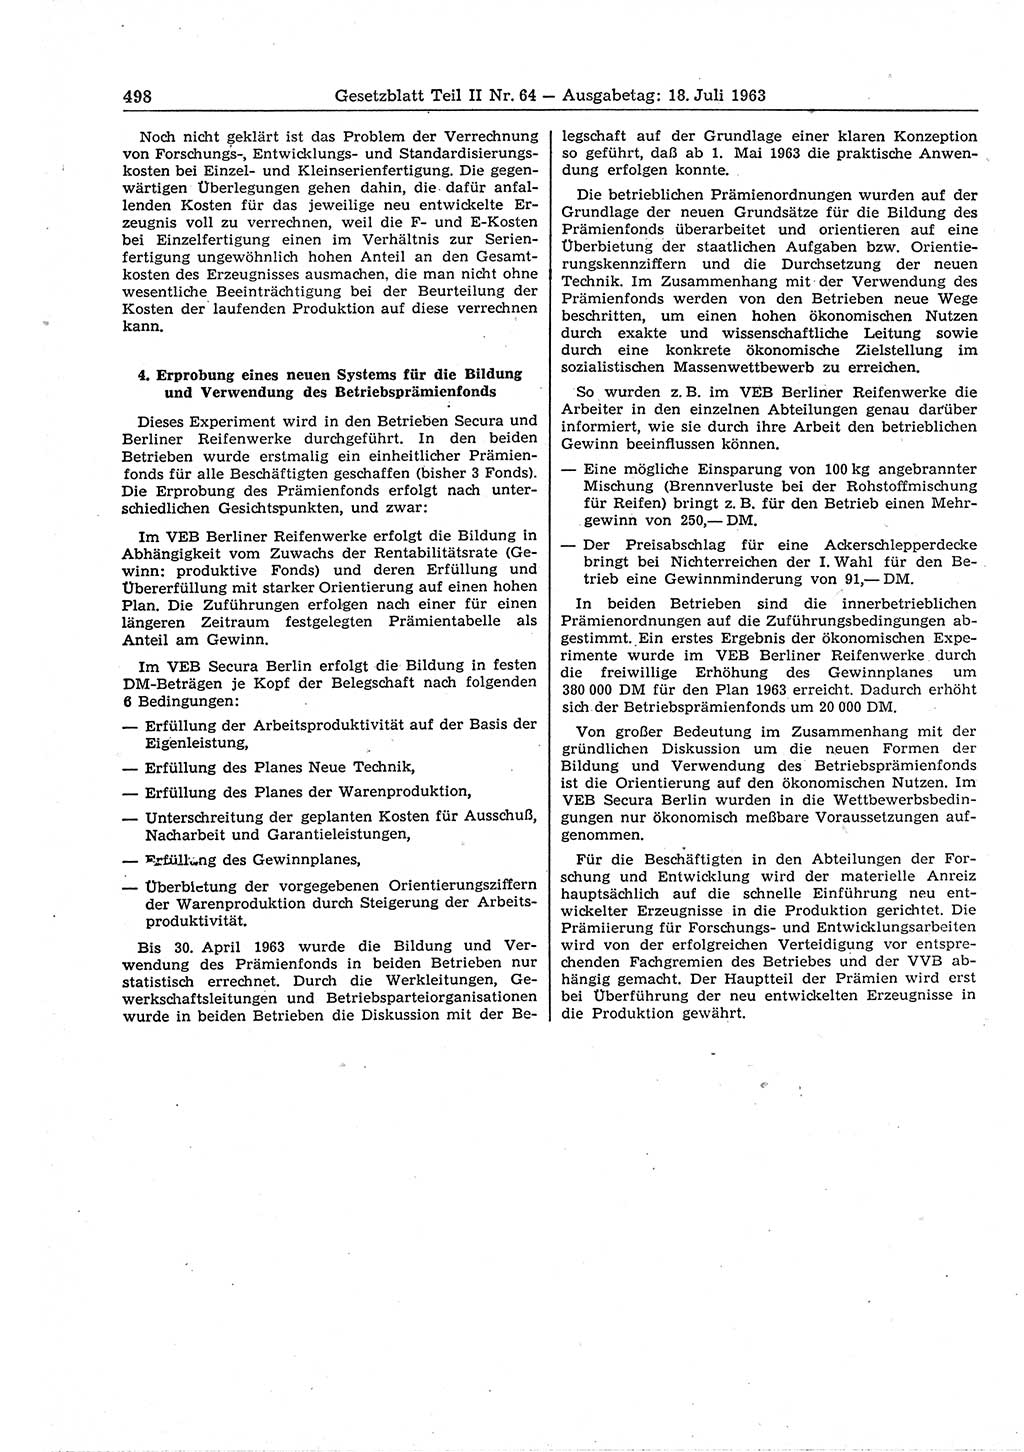 Gesetzblatt (GBl.) der Deutschen Demokratischen Republik (DDR) Teil ⅠⅠ 1963, Seite 498 (GBl. DDR ⅠⅠ 1963, S. 498)